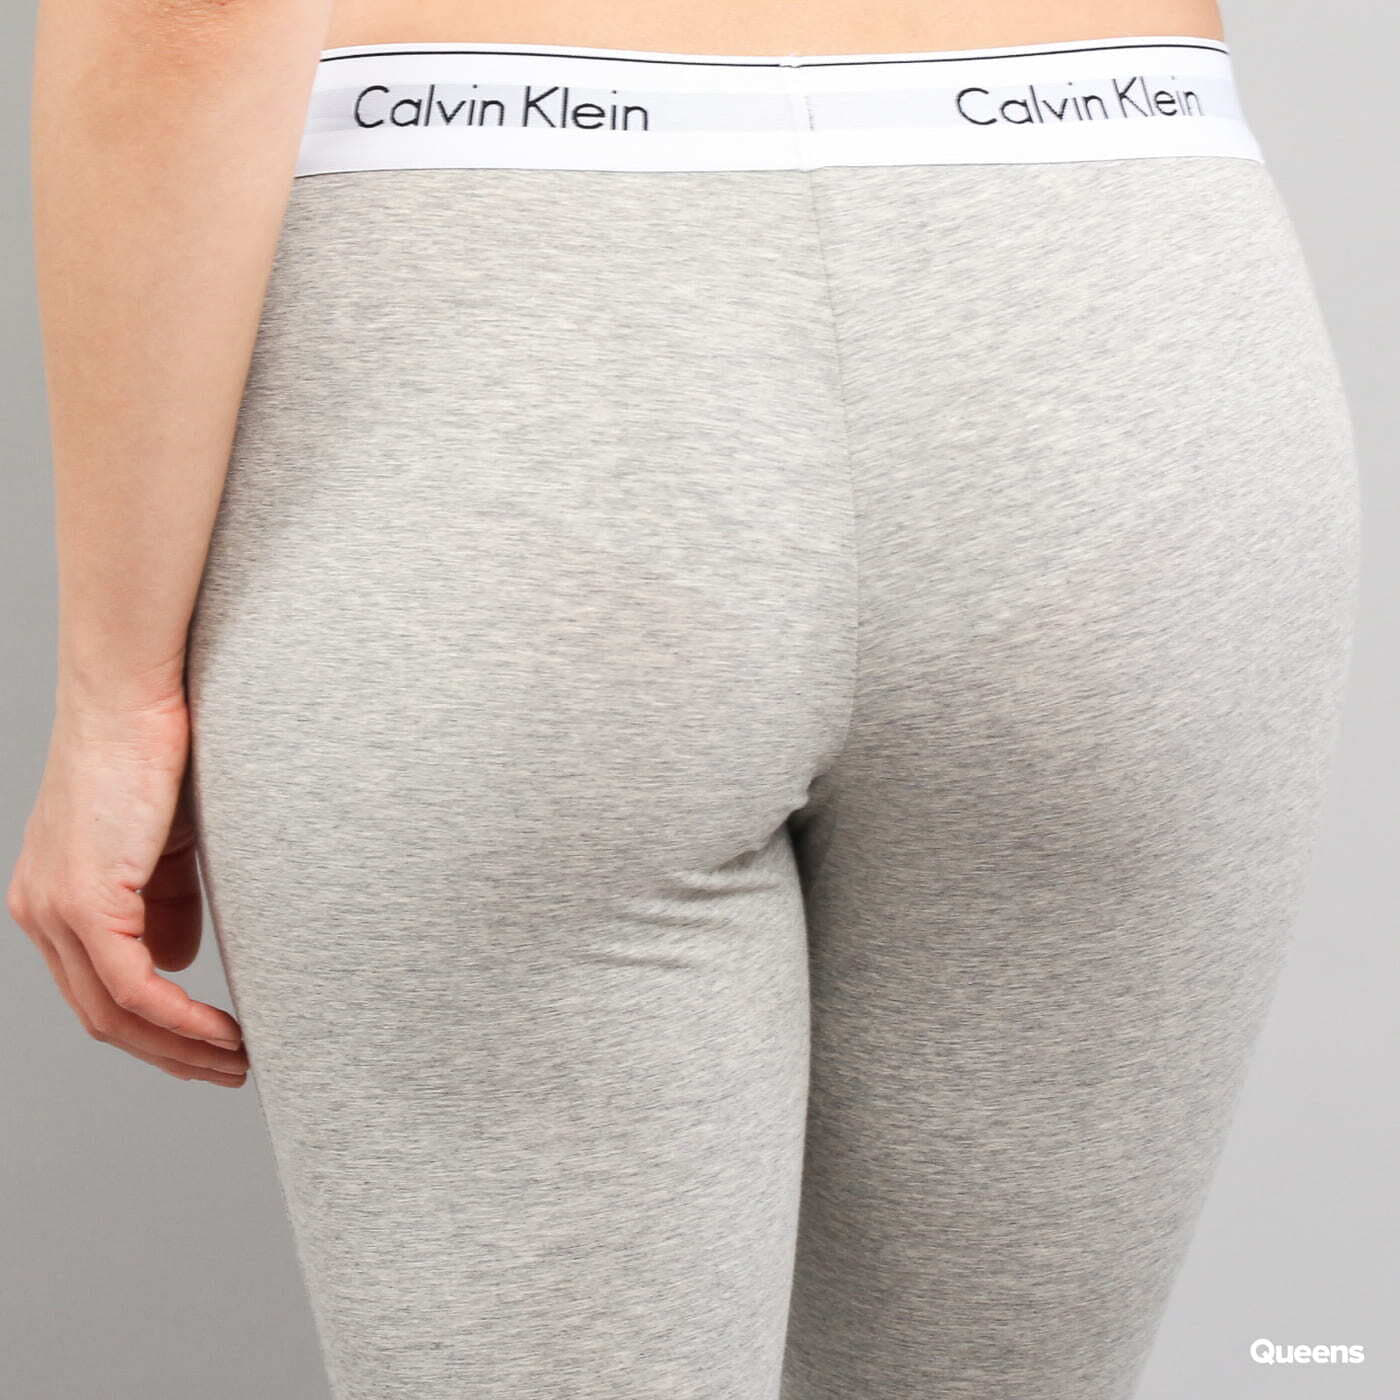 CALVIN KLEIN Calvin Klein MODERN COTTON - Leggings - Women's